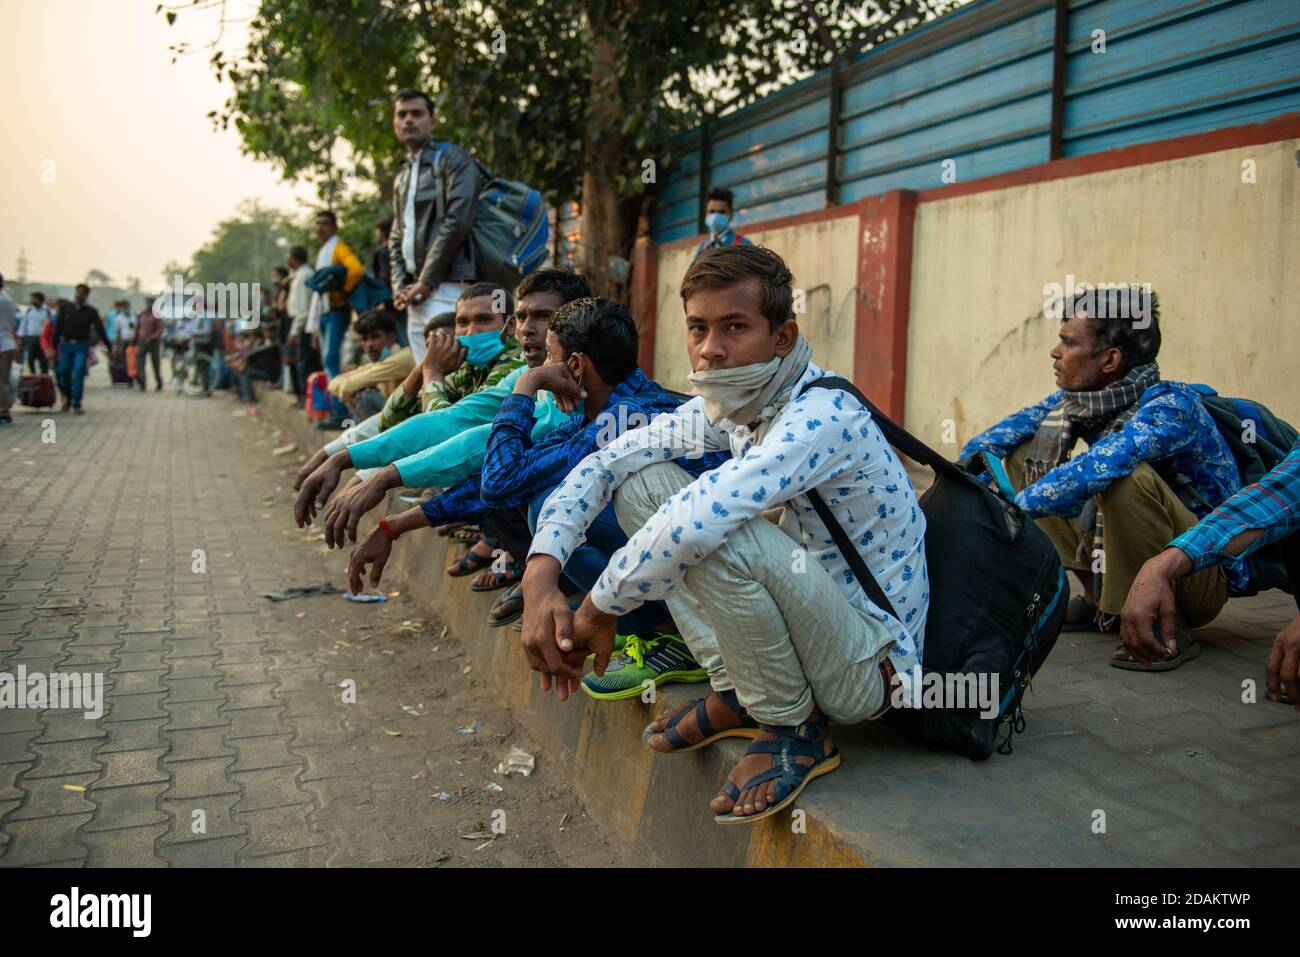 Les travailleurs migrants attendent les bus avant les célébrations de Diwali.UN festival majeur de religion hindoue, la plupart des gens veulent célébrer Diwali avec leur famille pour qu'ils doivent rentrer chez eux. Actuellement, les trains ne sont pas entièrement opérationnels et les gens voyagent en bus. Banque D'Images